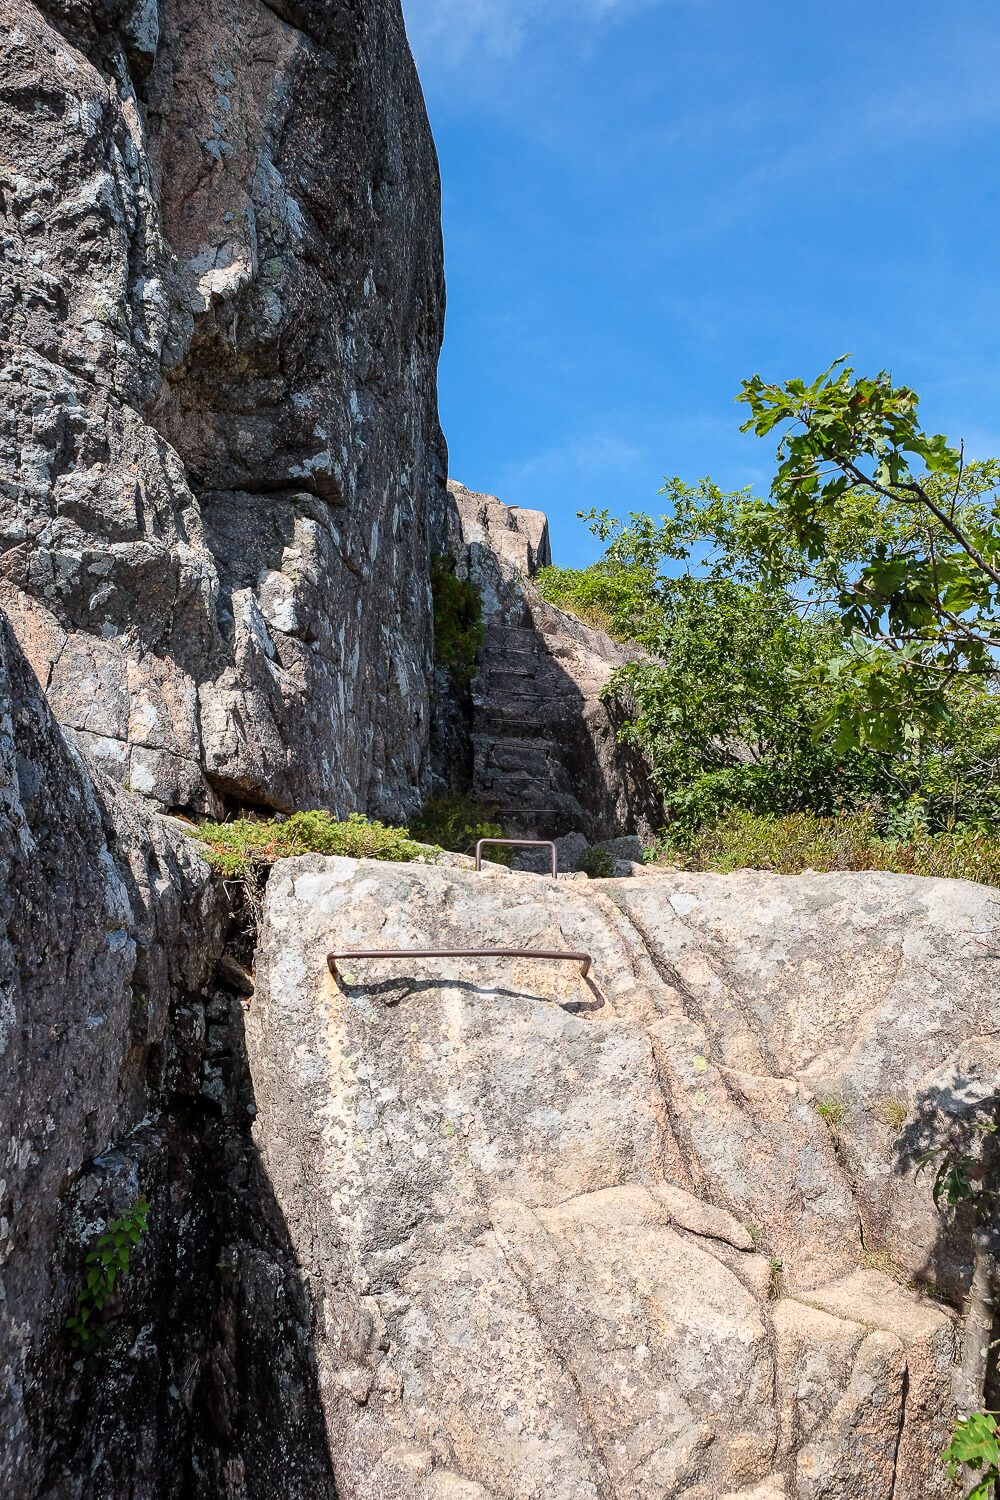 Trail Guide: Jordan Cliffs Trail